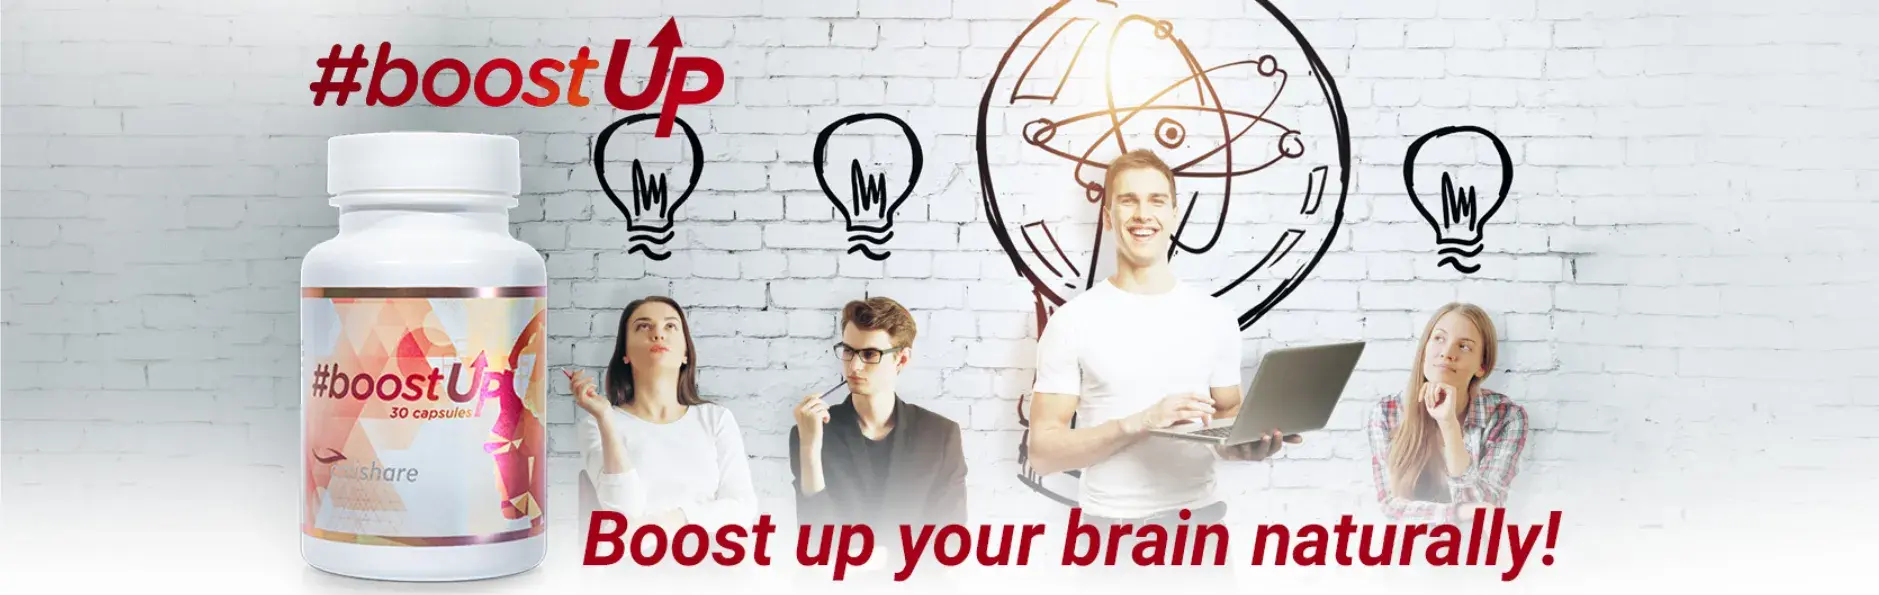 #boostUp - Razvijte svoj mozak prirodnim putem